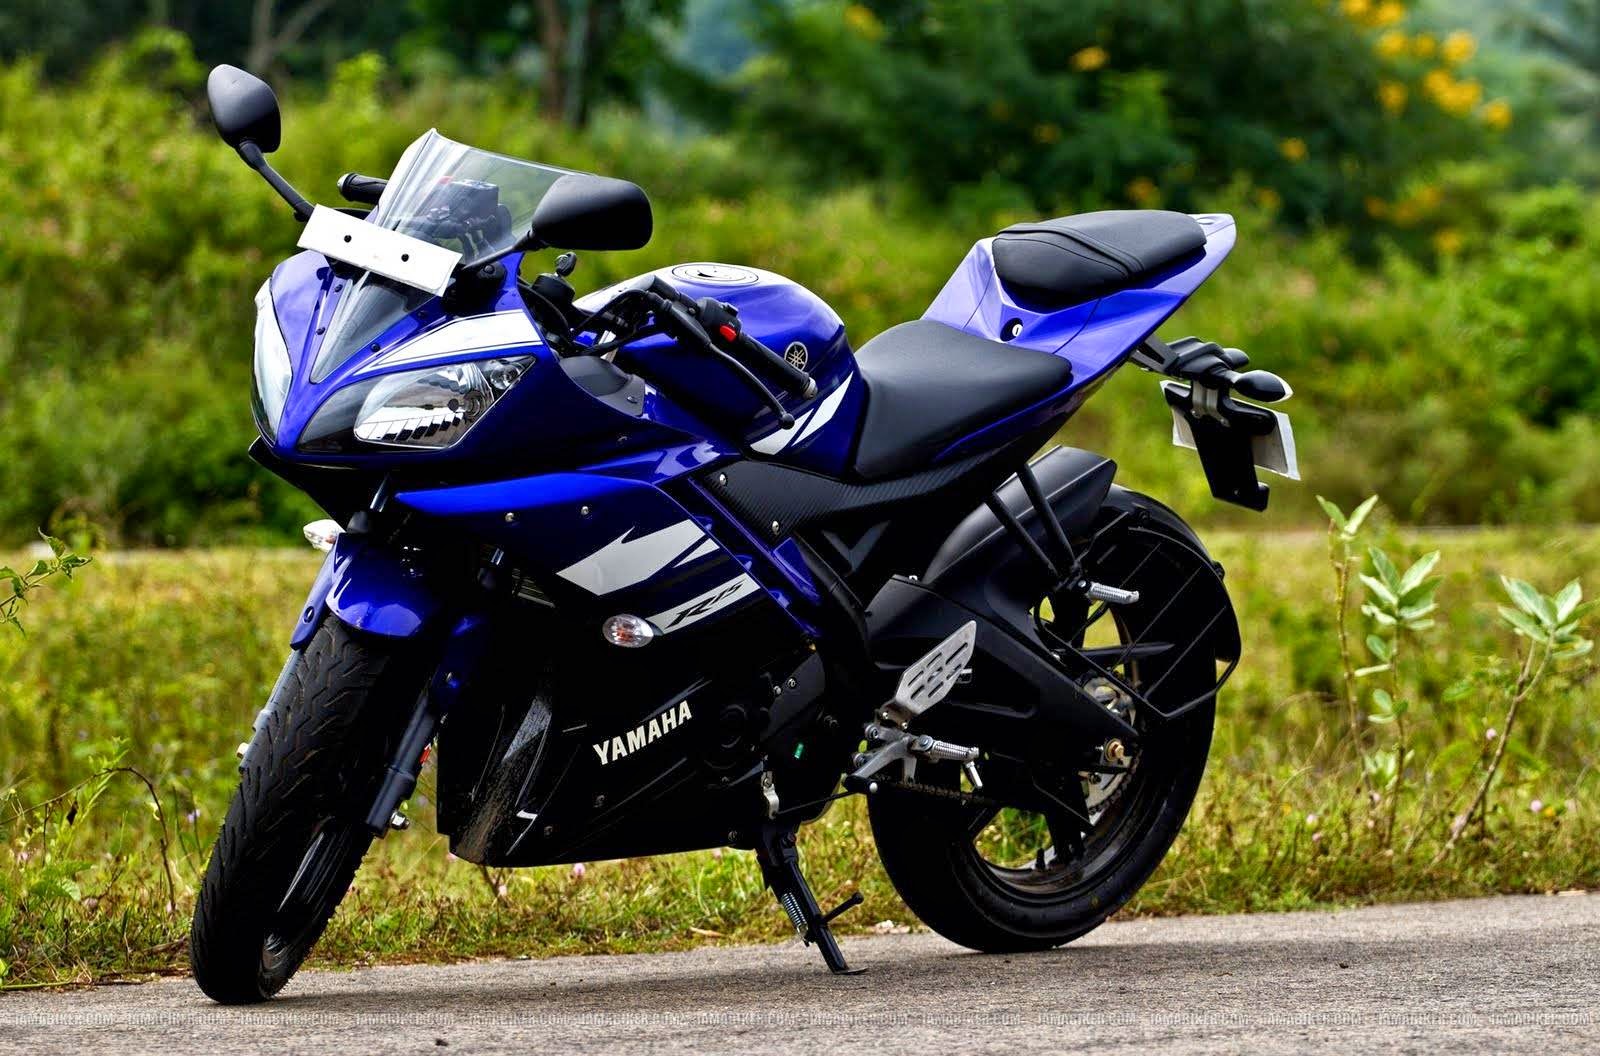 Daftar Harga Sepeda Motor Yamaha Baru Bekas Terbaru Bulan Desember